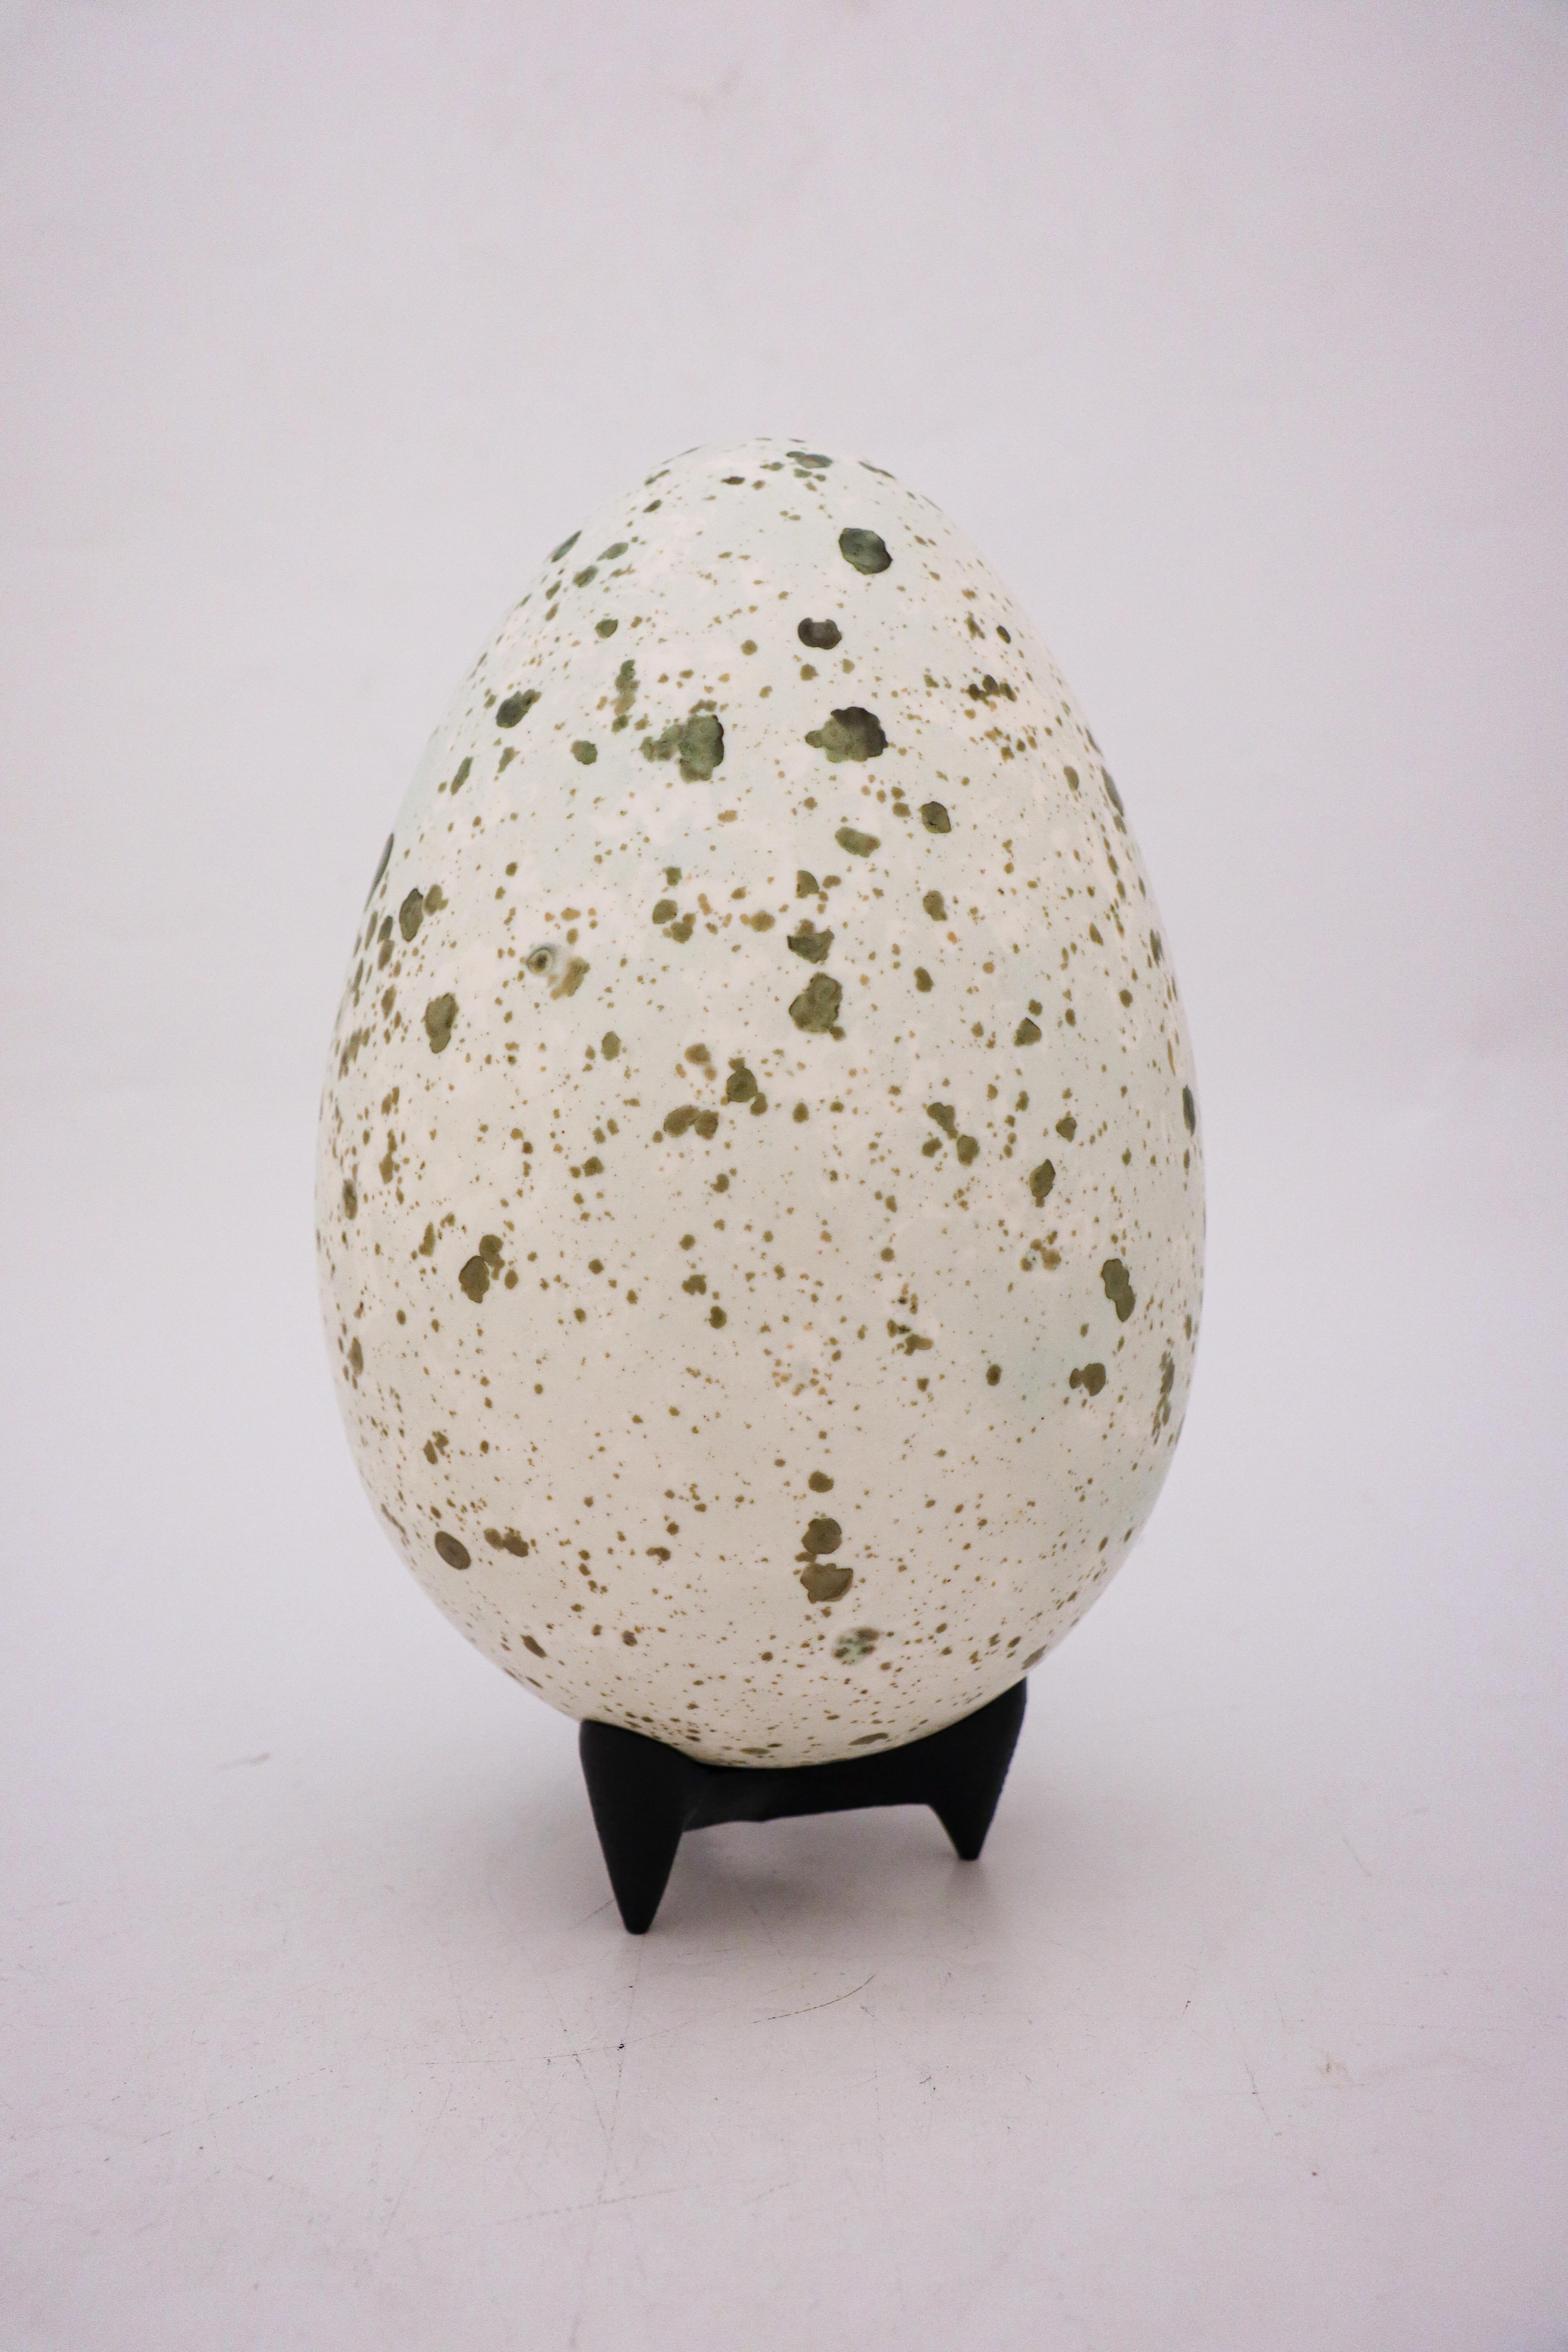 Un œuf conçu par le céramiste suédois Hans Hedberg, qui a vécu et travaillé à Biot, en France. Cet œuf a une hauteur de 30 cm (12